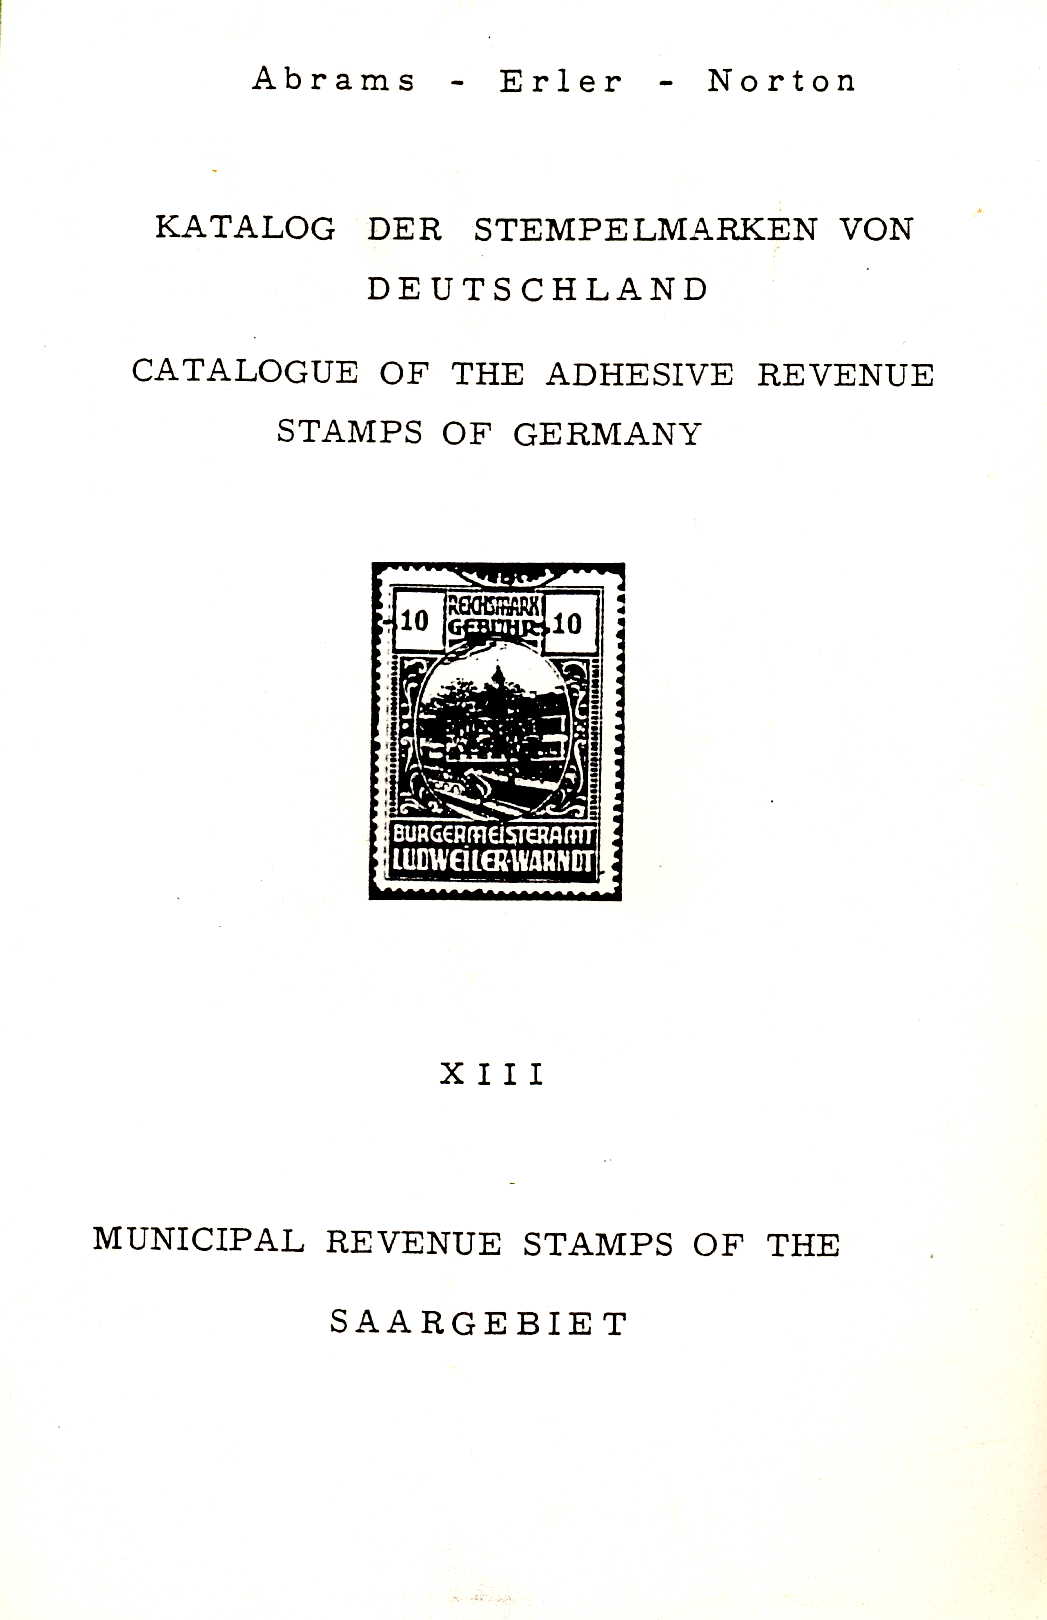 Abrams/Erler/Norton Katalog der Stempelmarken von Deutschland X